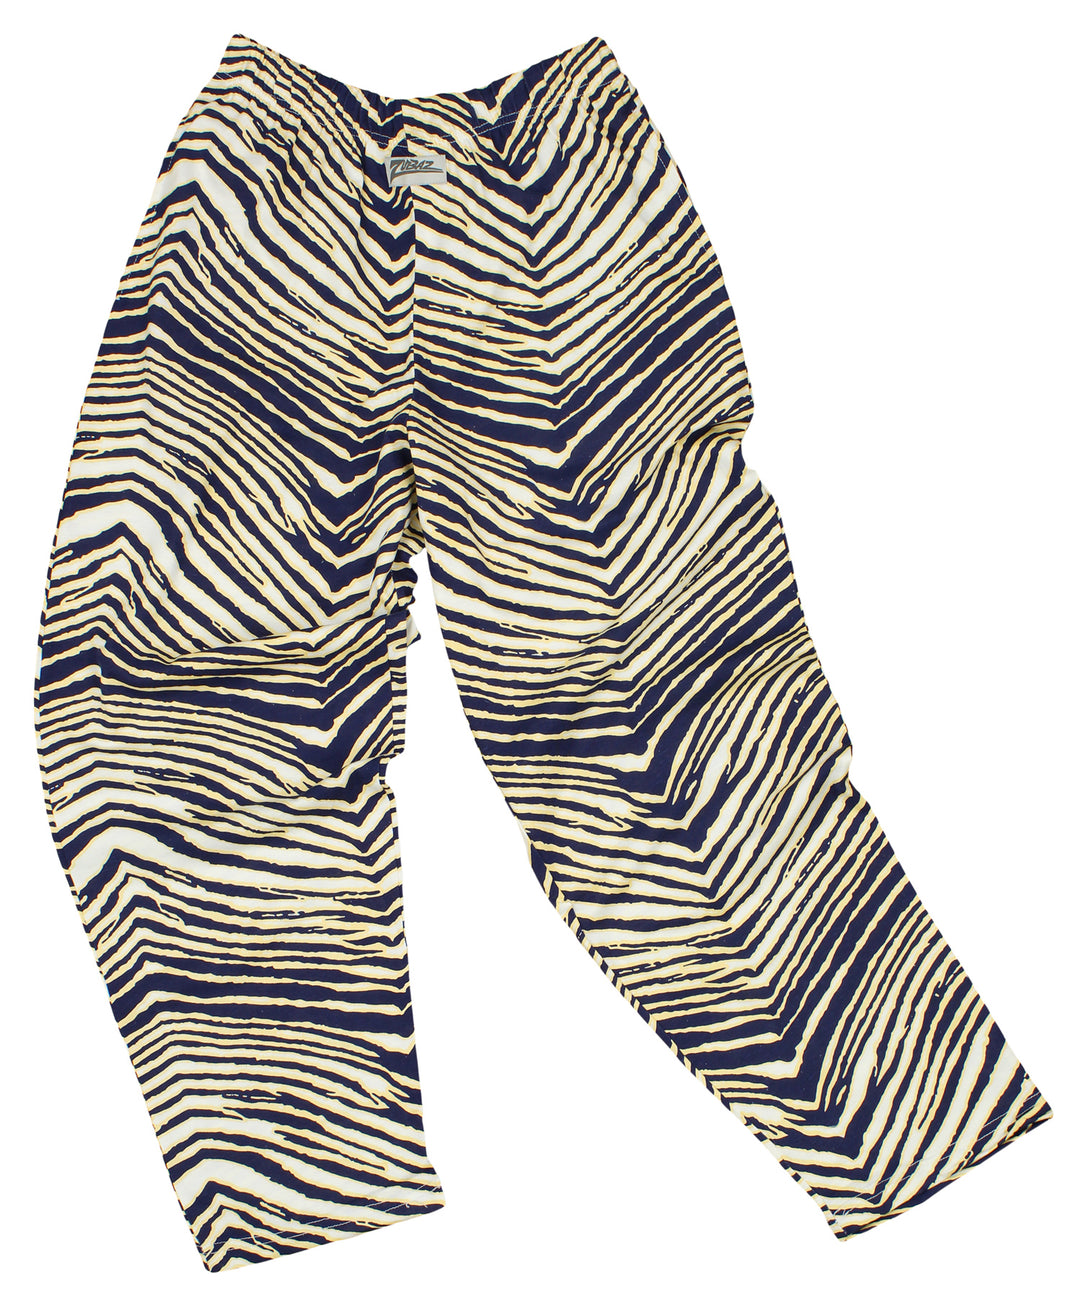 Zubaz Men's Zebra Striped Lounge Pants, Navy/White/Gold